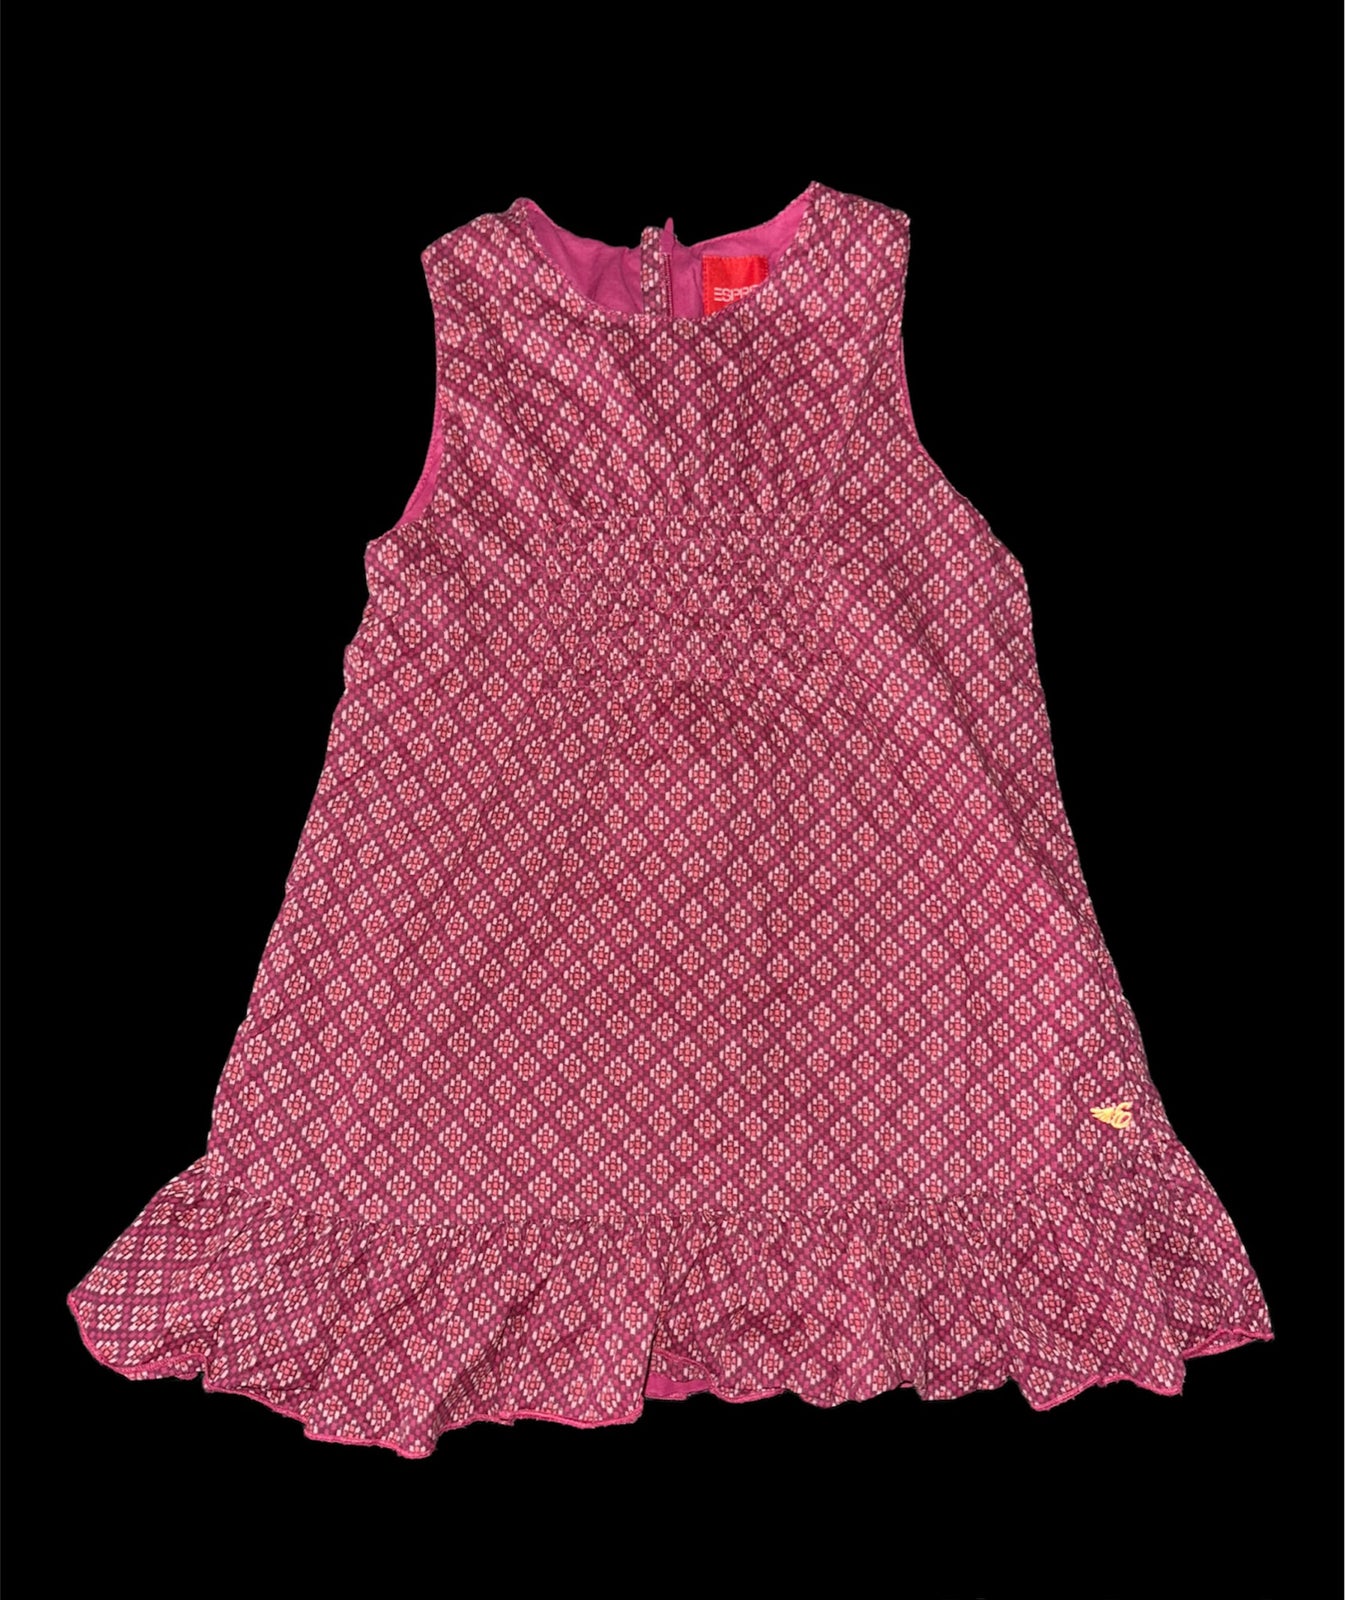 Kjole, Esprit kjole bordeaux rød mønstrede lyserød ors, Esprit – dba.dk Køb og Salg af Nyt og Brugt